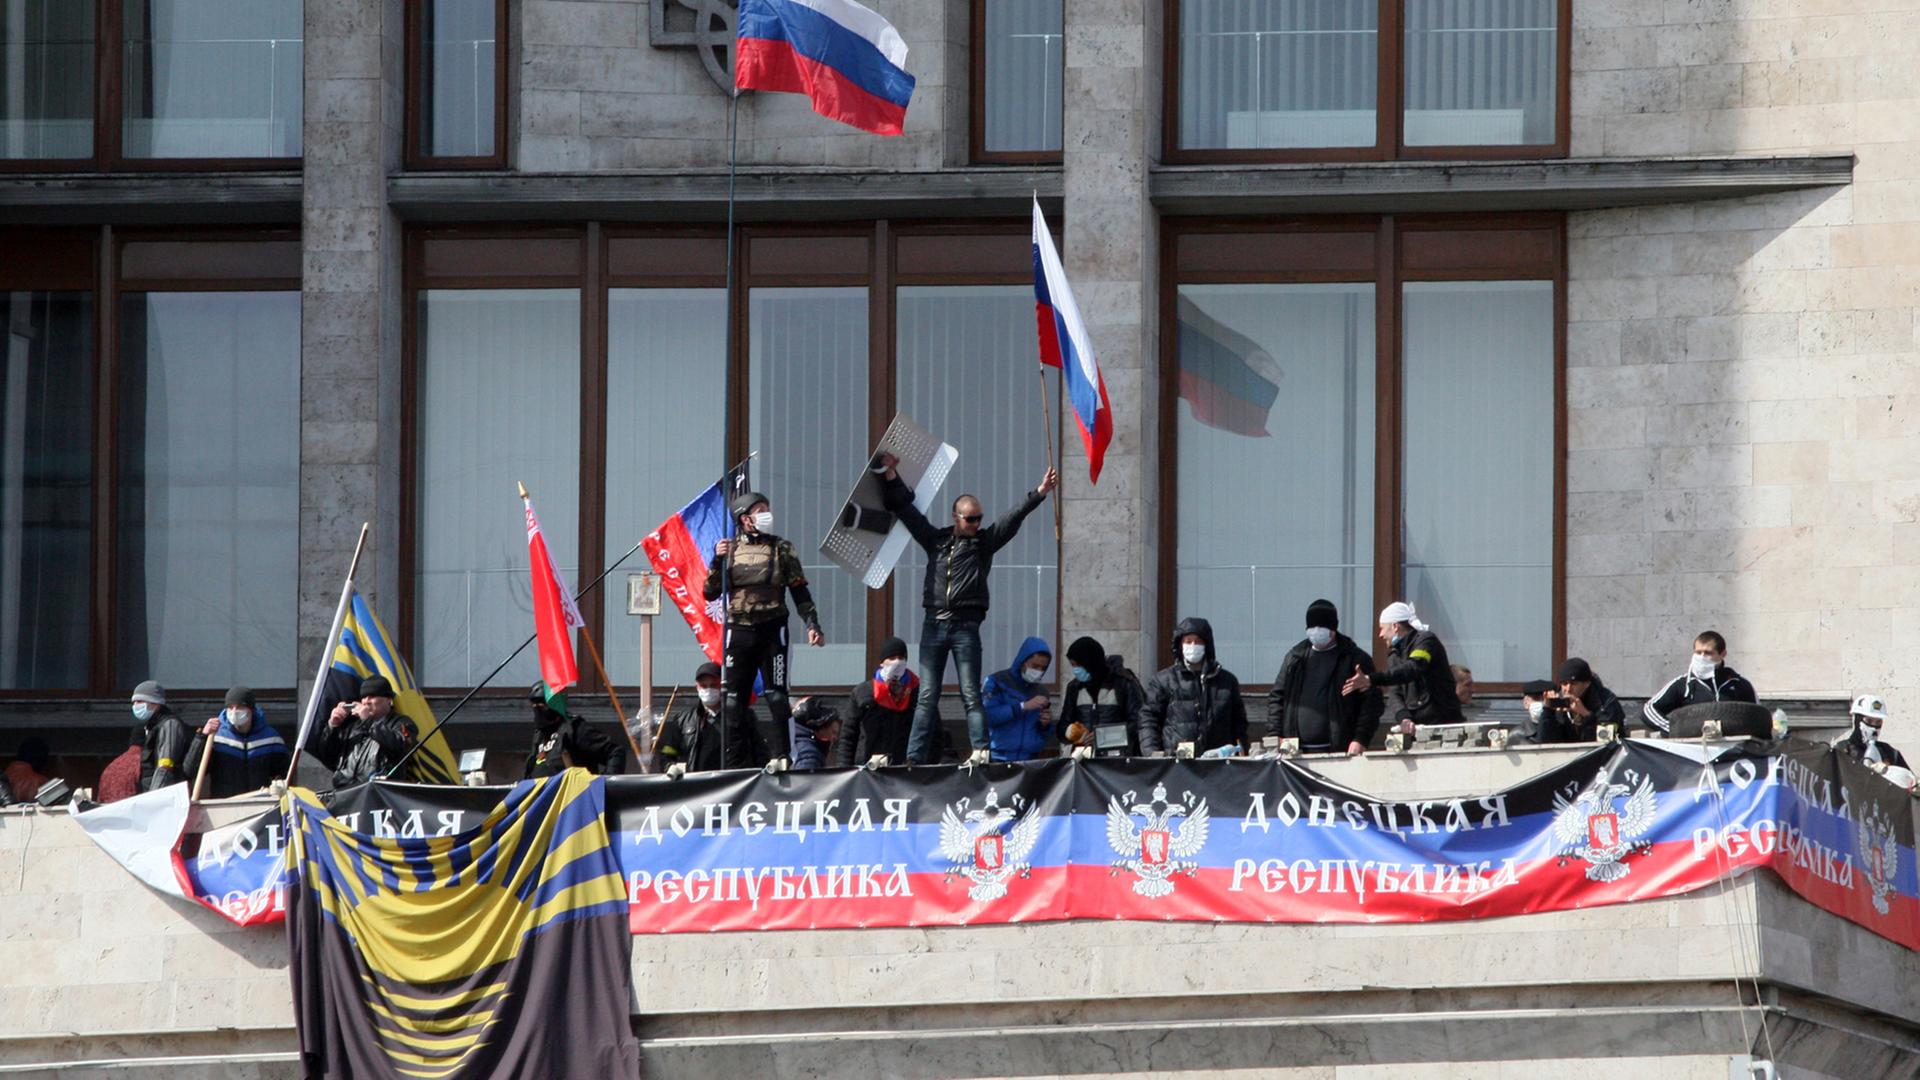 Am 7. April 2014 wurde in der Ukraine auf Teilen des Gebiets der Oblast Donezk die "Volksrepublik Donezk" ausgerufen.